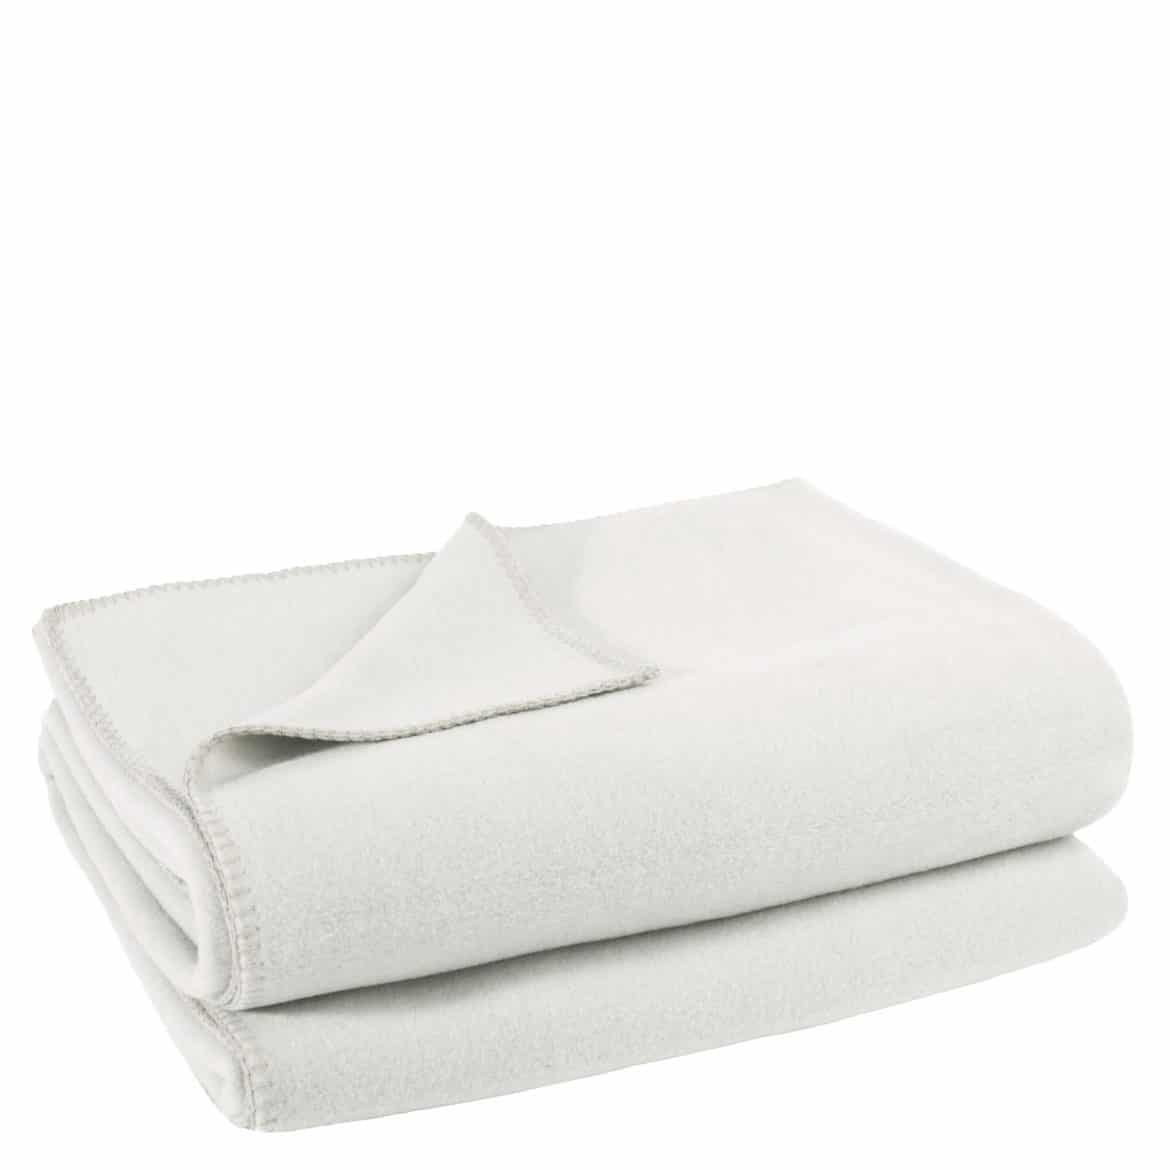 Zoeppritz Soft-Fleece Decke Farbe 010 offwhite 160 x 200 cm